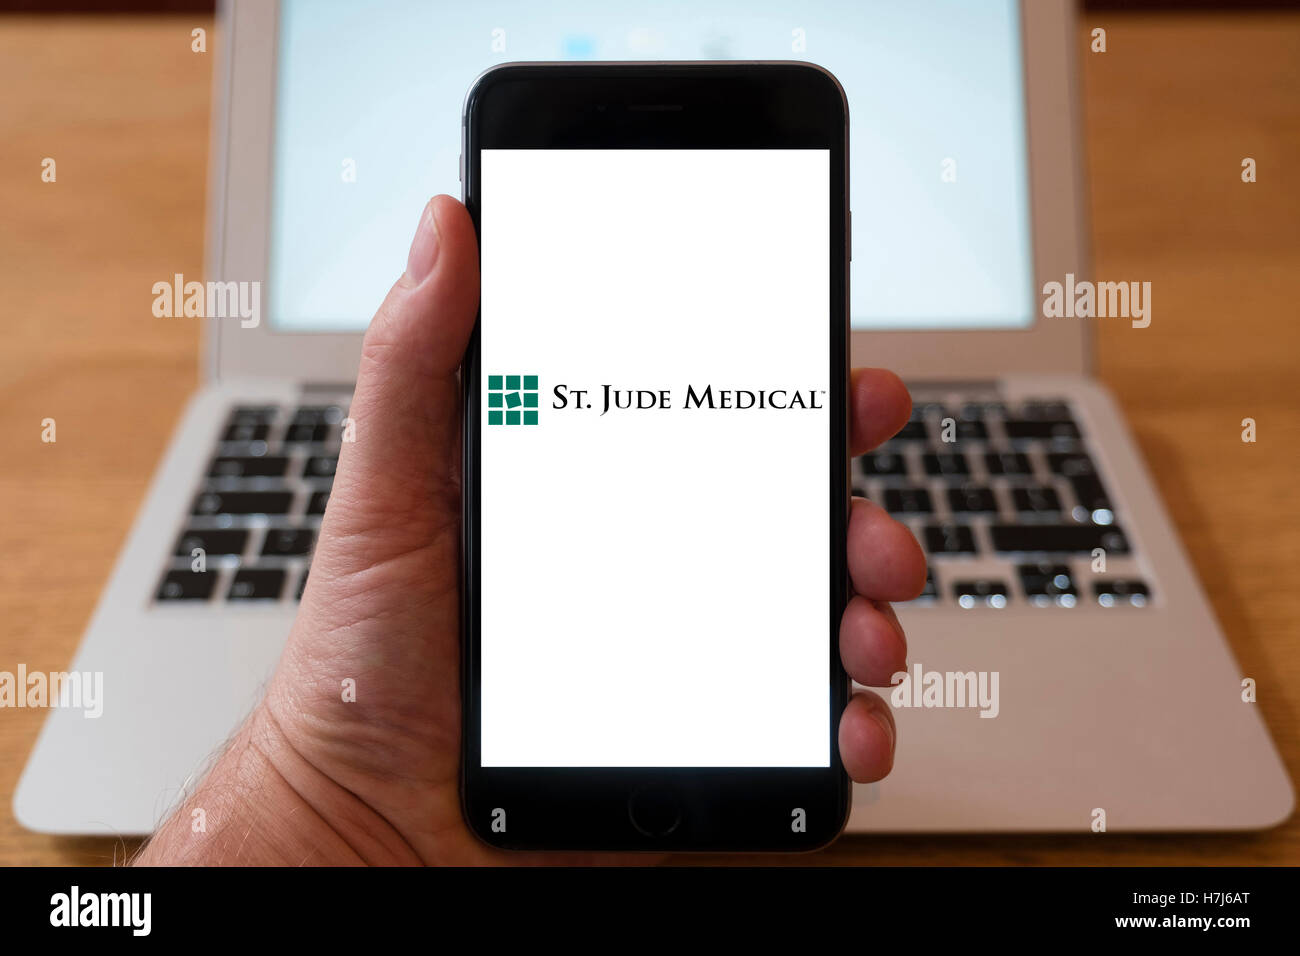 L'utilisation de l'iPhone téléphone intelligent pour afficher le logo de St Jude Medical, , un américain global medical device company Banque D'Images